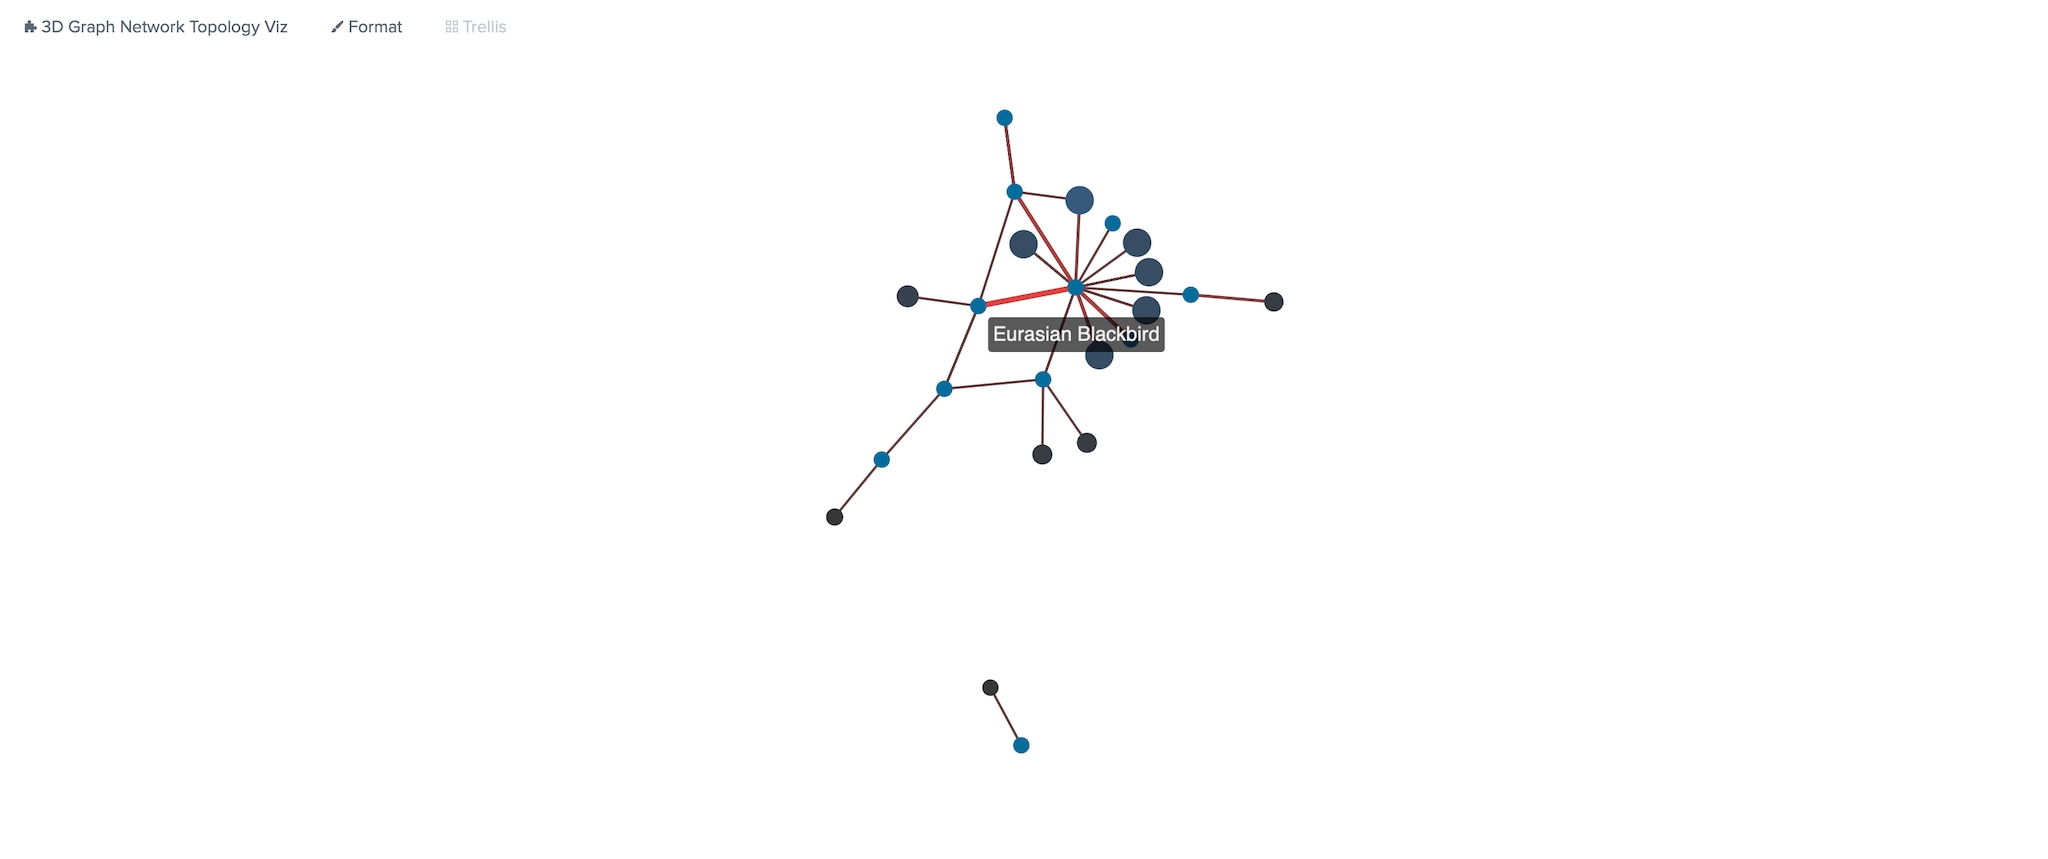 Visualisation de topologie de réseau en 3D